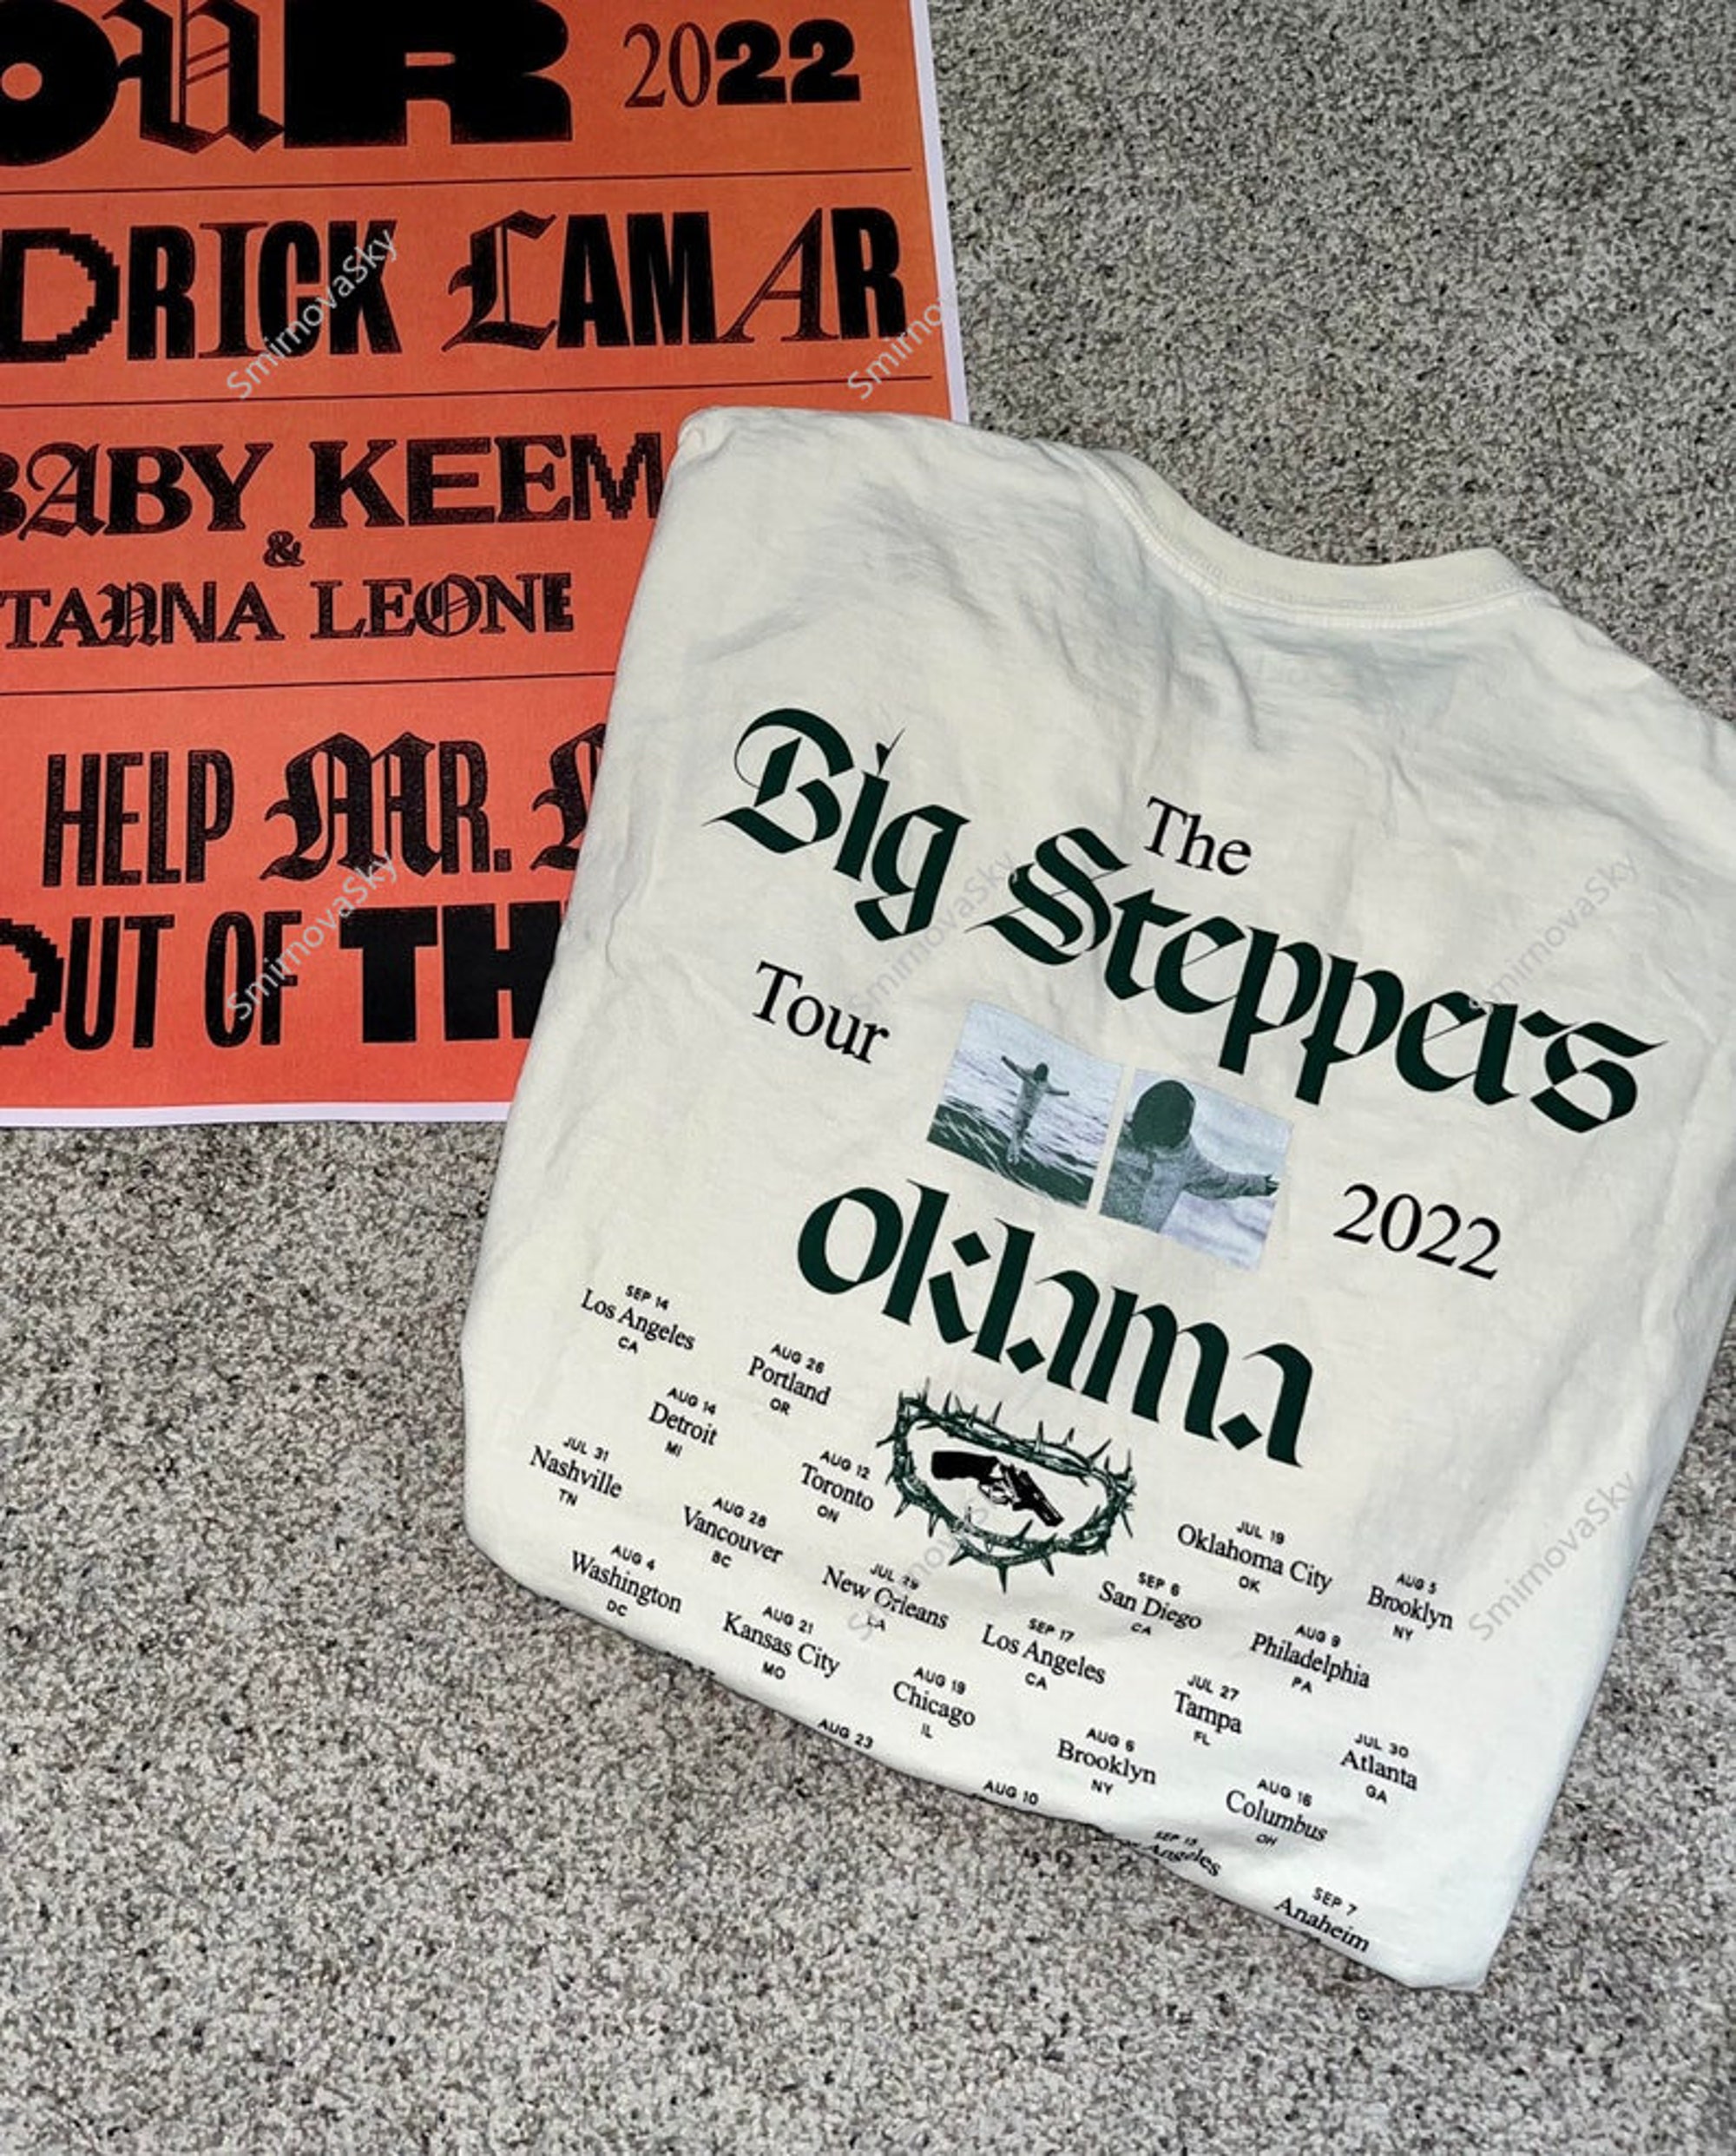 The Big Steppers Tour Oklama 2022 Shirt, Kendrick Lamar Tour Shirt